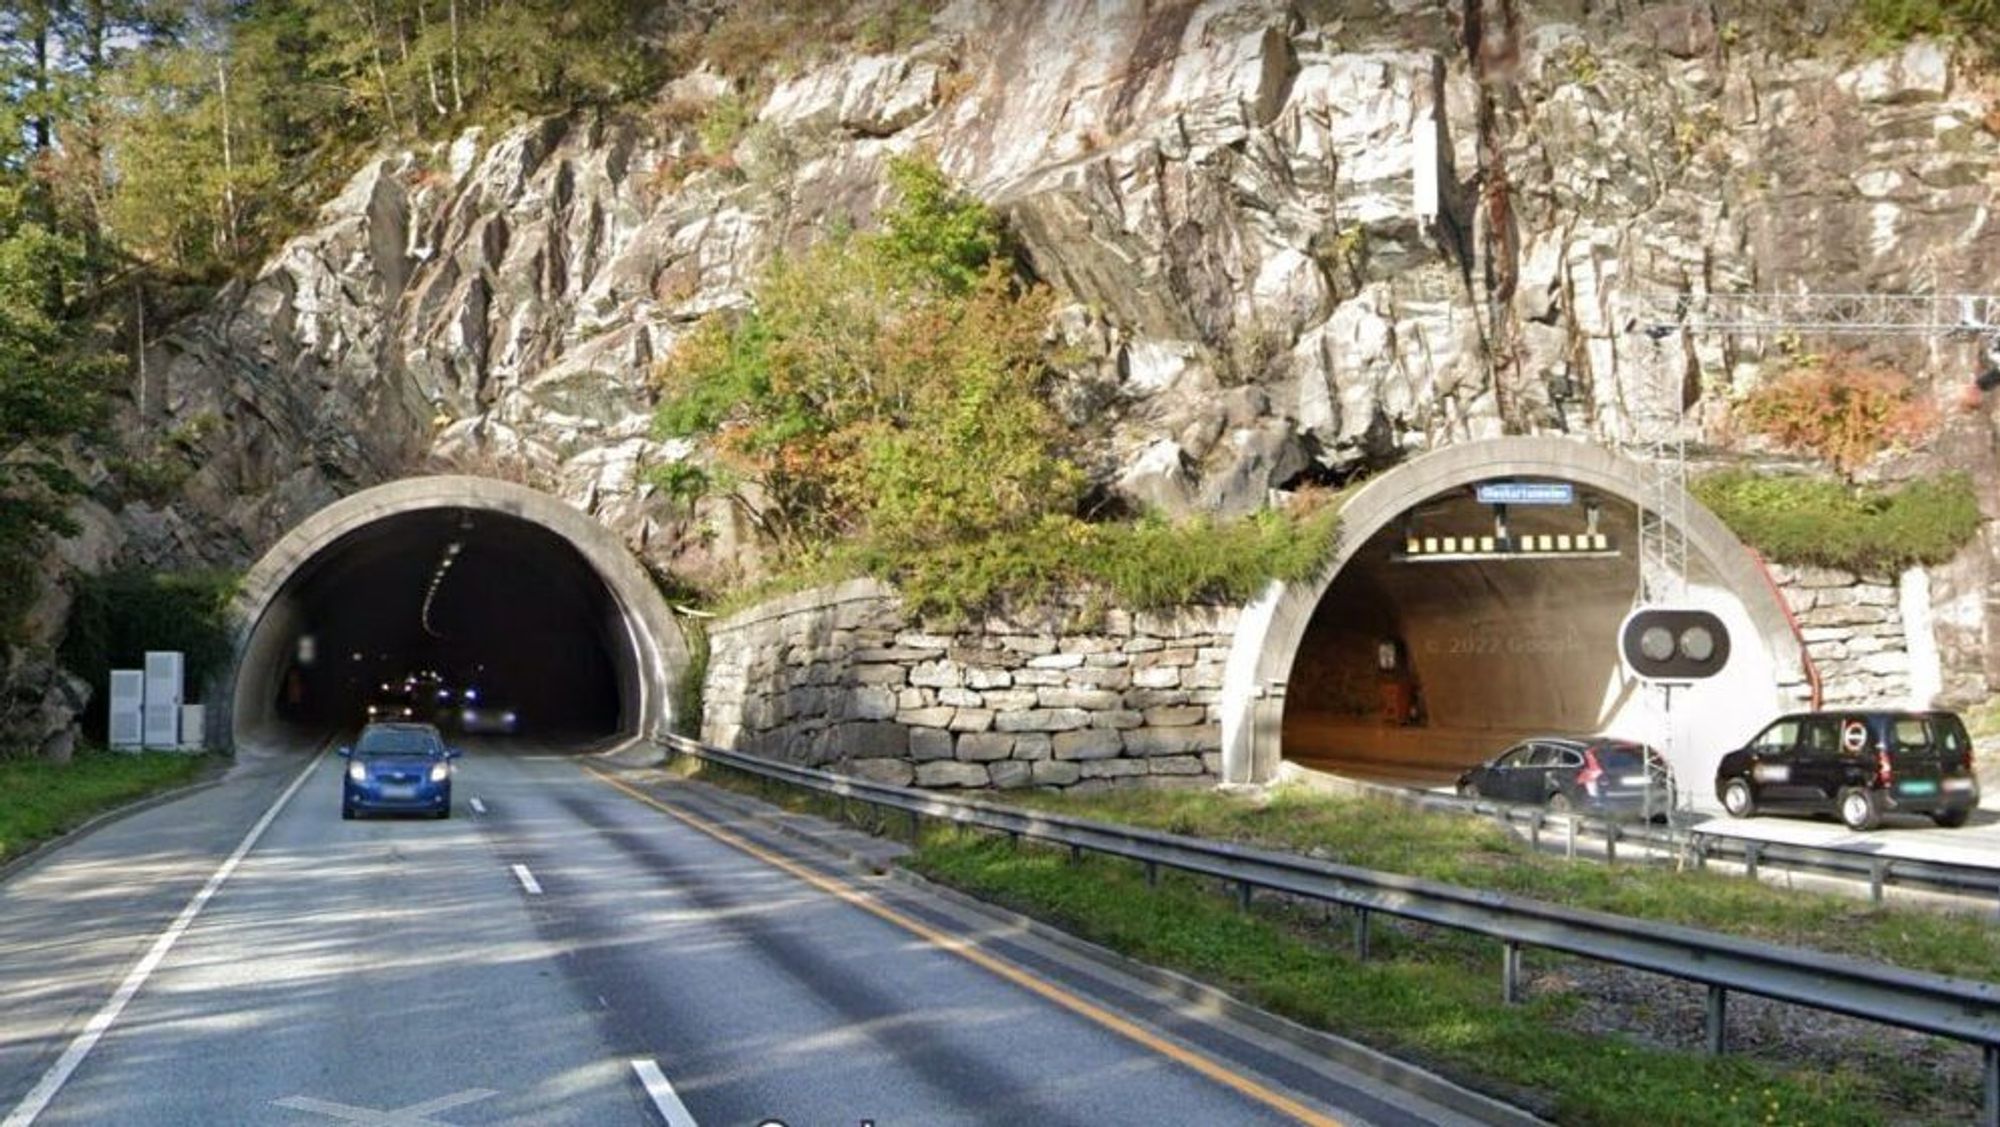 Glaskartunnelen er en tunnel på europavei 39 og europavei 16 i Bergen har to løp på henholdsvis 592 og 580 meter. Det første løpet åpnet 4. juli 1985, og det andre 18. juni 1990.